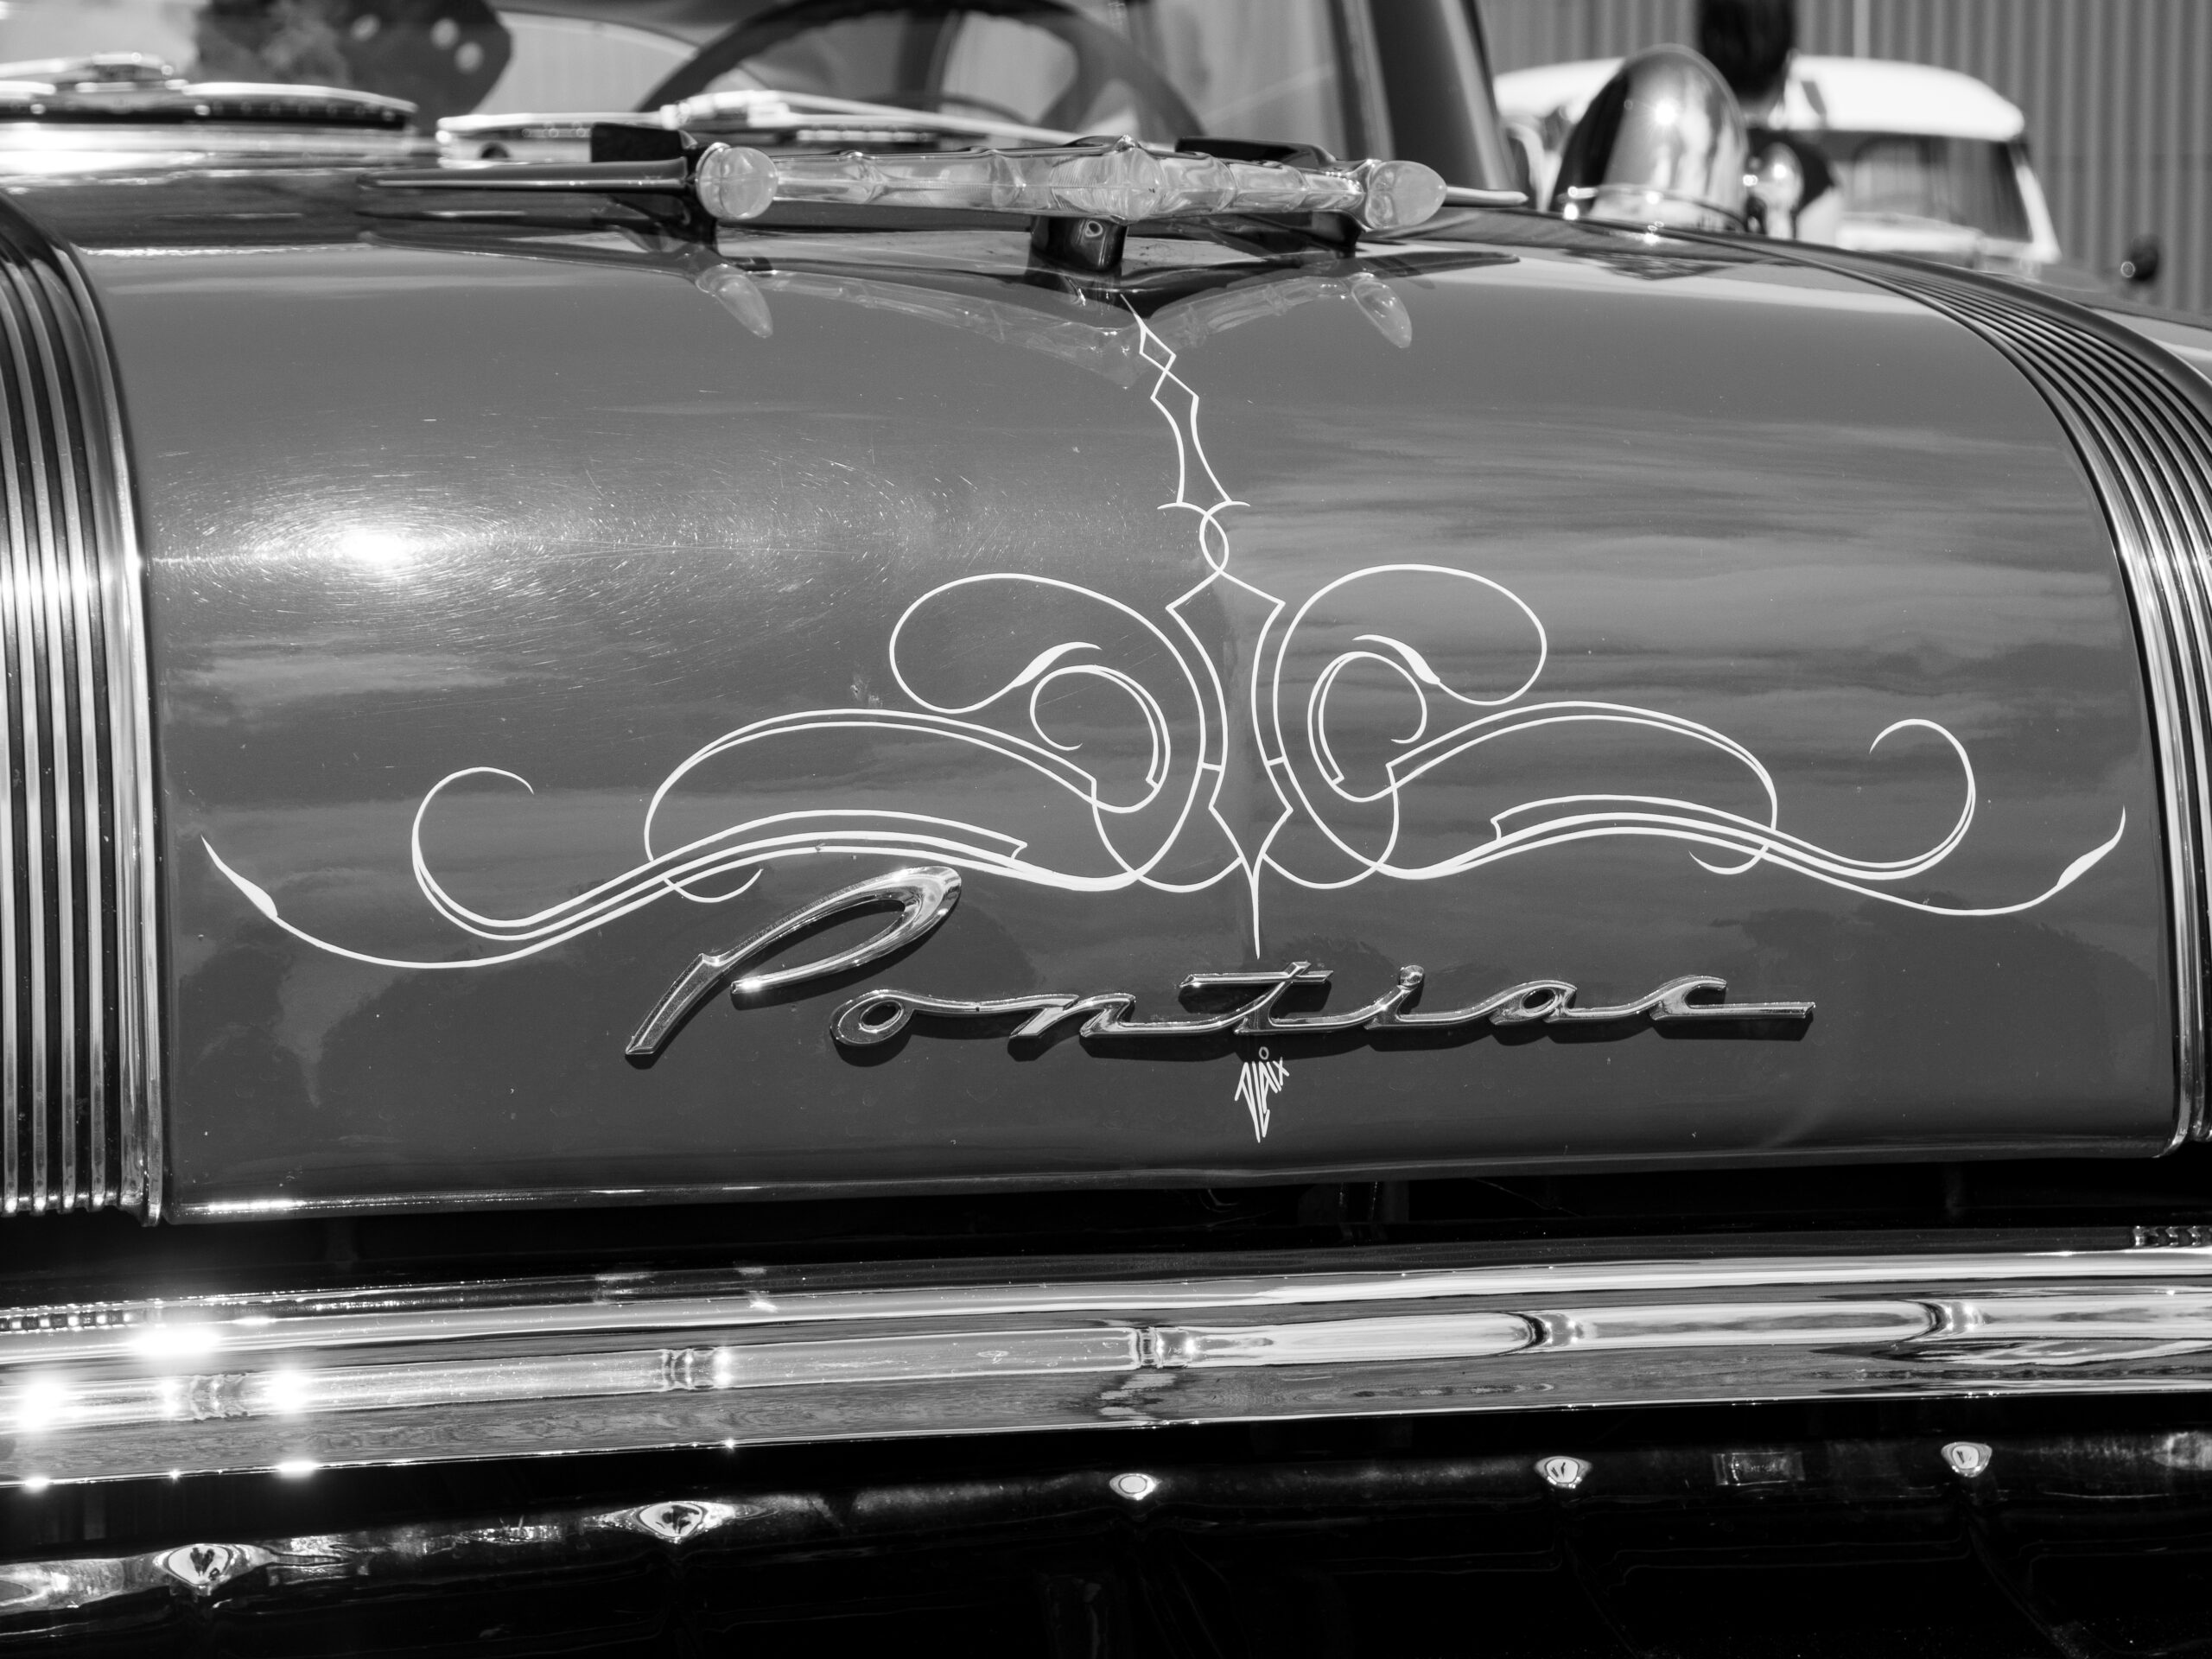 Paint stripping sur Pontiac starchief de 1956